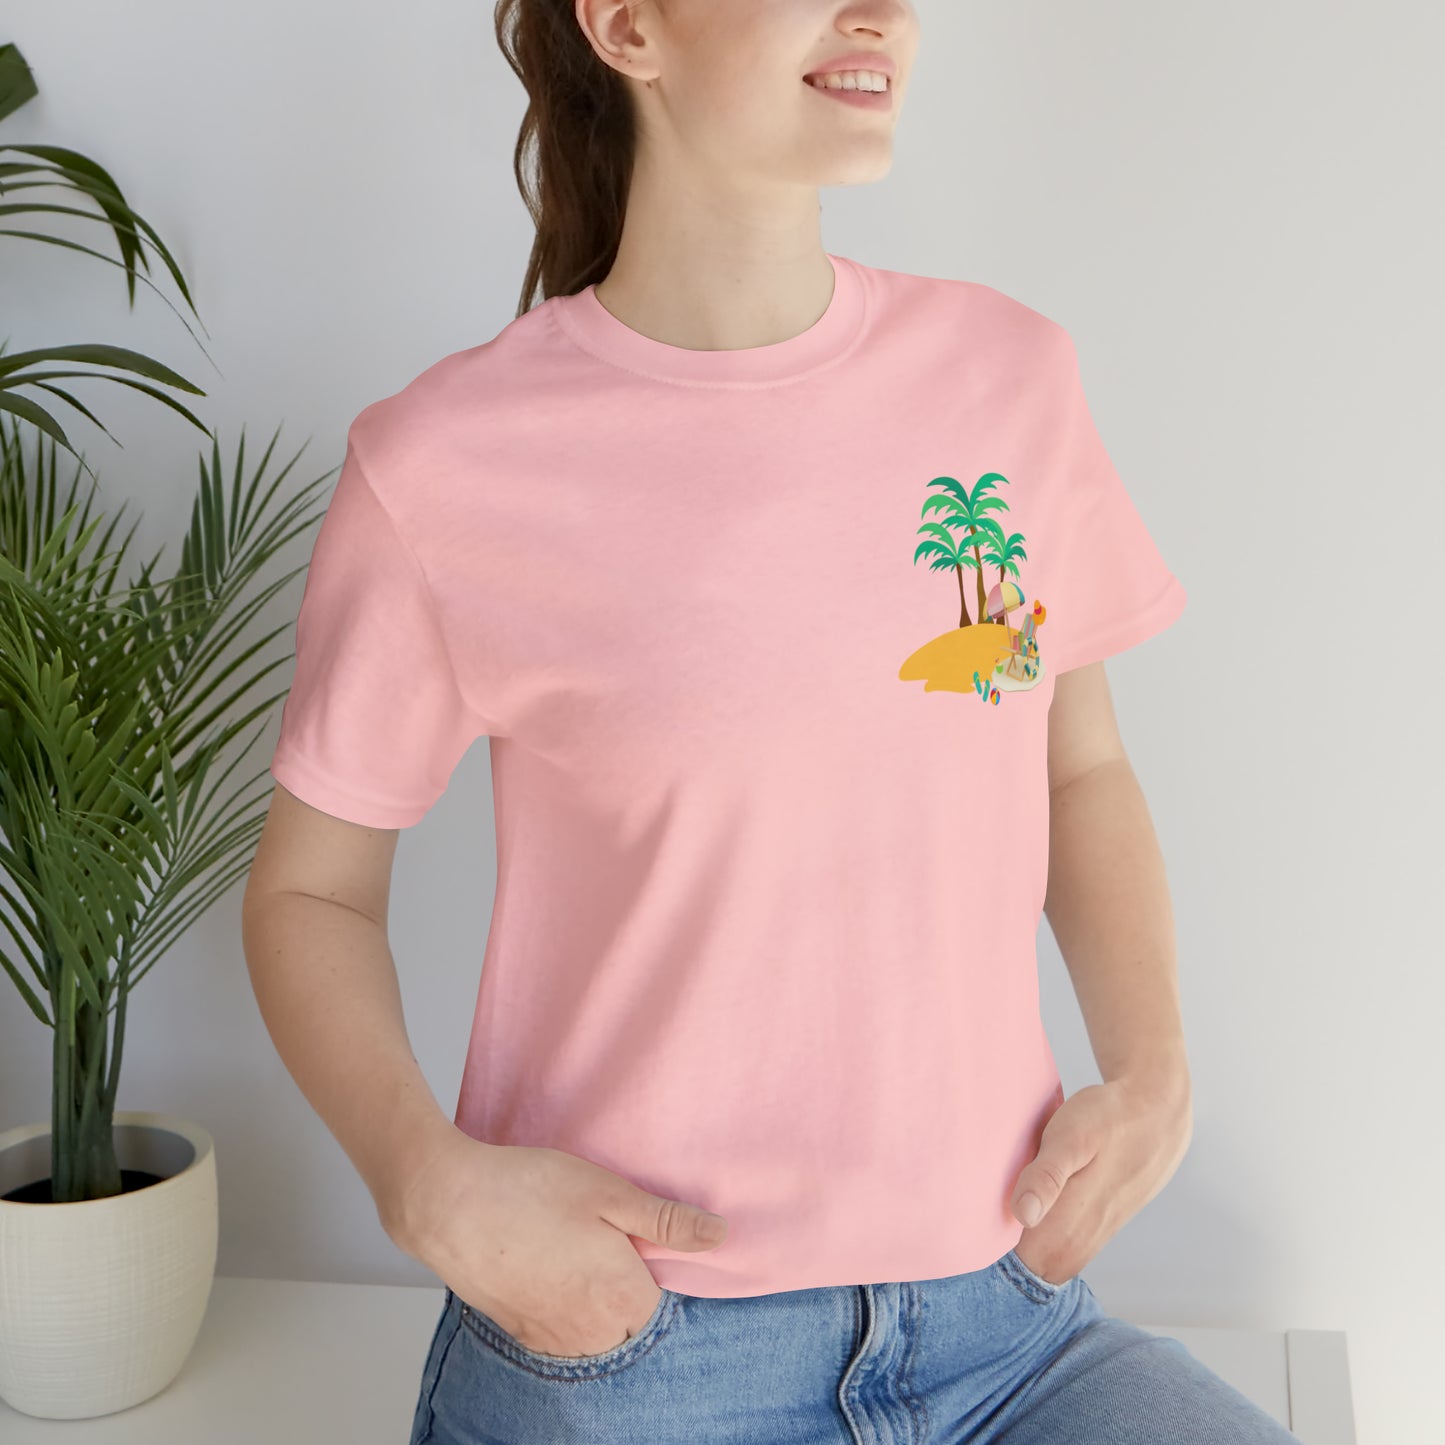 Beach shirt, summer shirts for women, beach shirts for women, beach shirts for men, beach shirts funny, summer shirts aesthetic